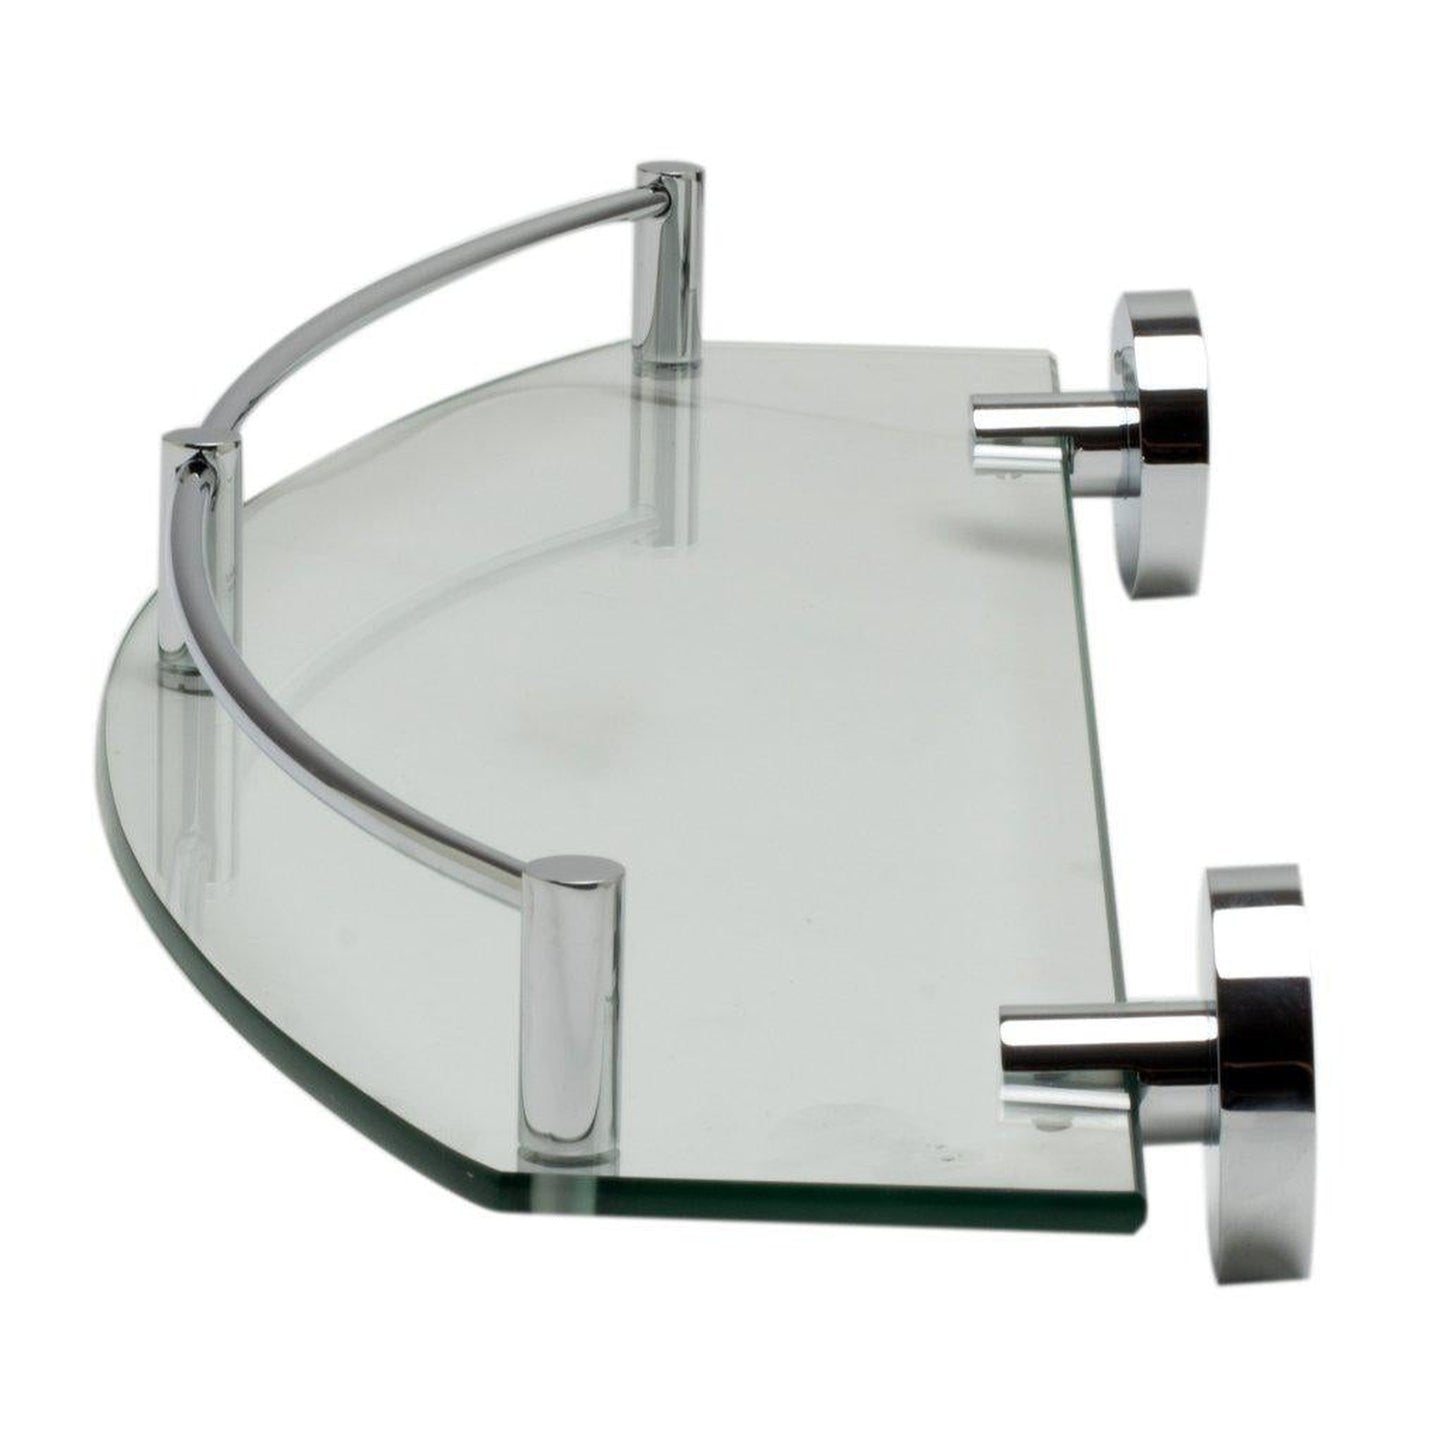 ALFI Brand AB9547 Polished Chrome Wall-Mounted Glass Shower Shelf Bathroom Accessory